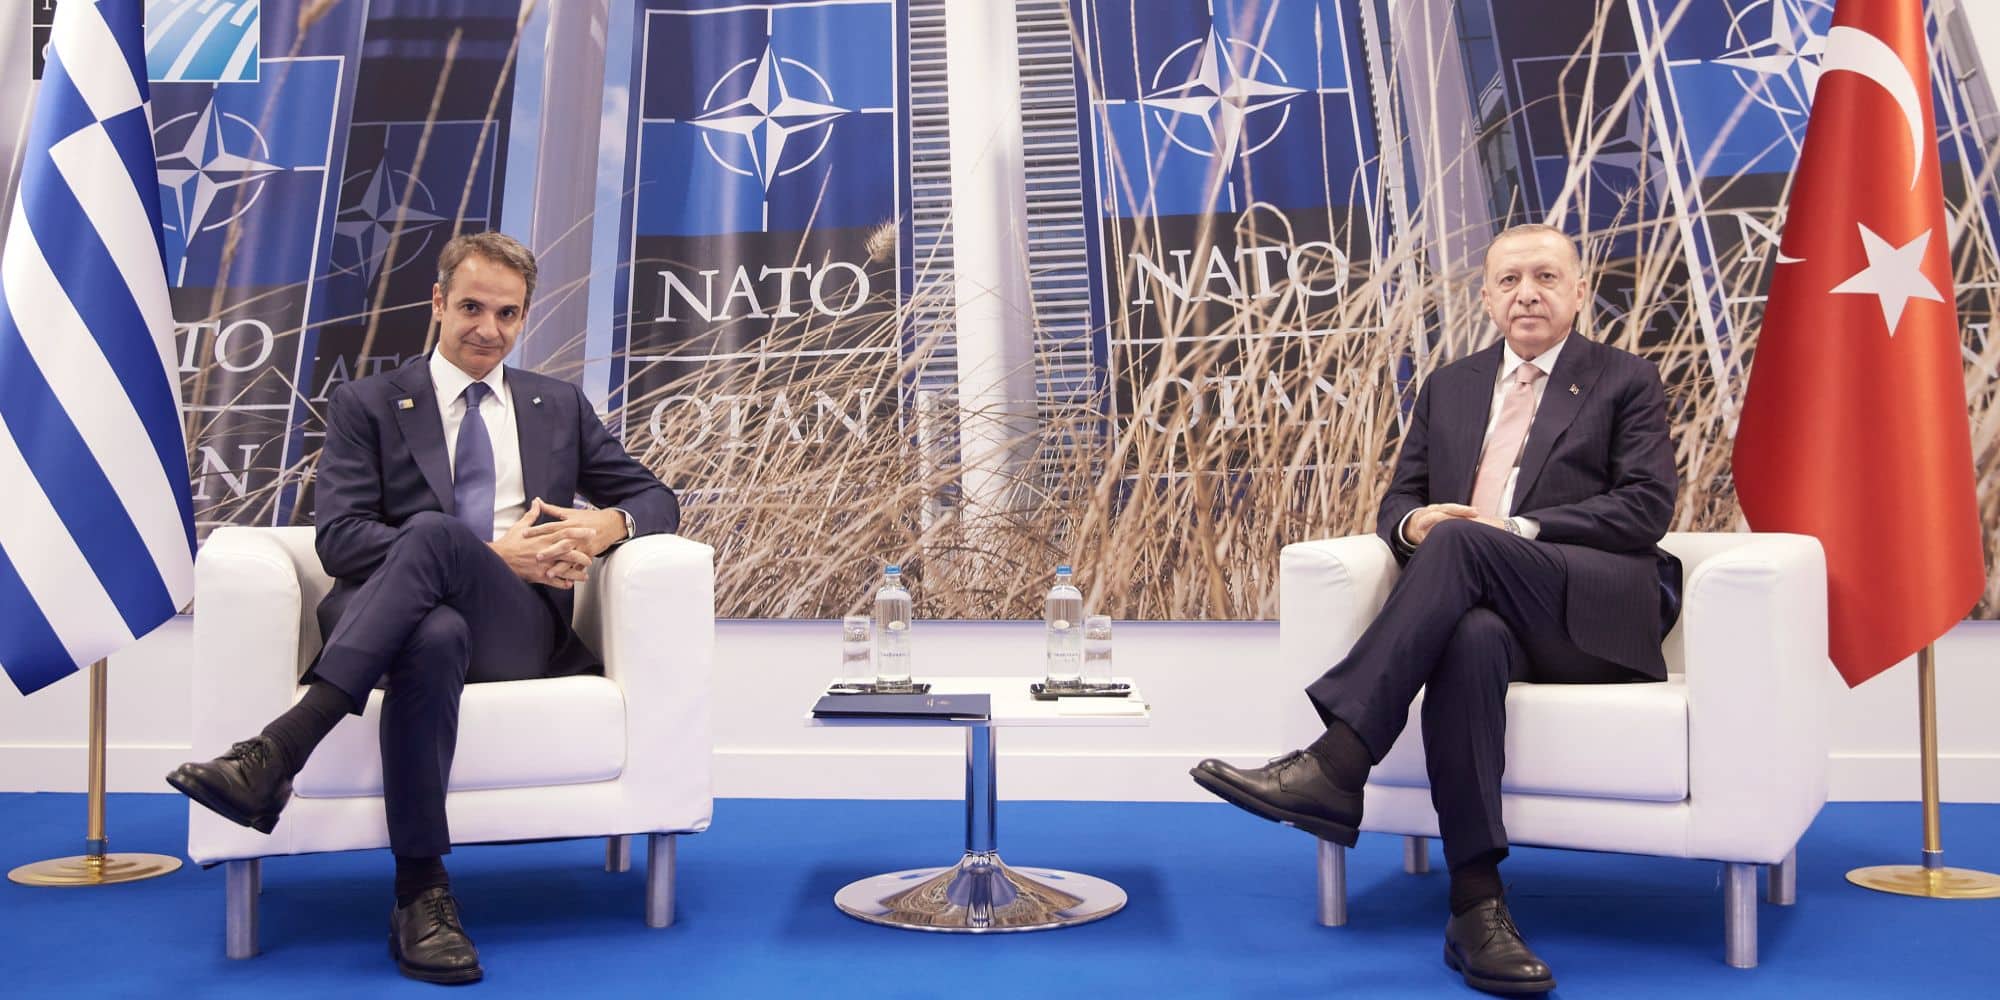 Ο Κυριάκος Μητσοτάκης και ο Ρετζέπ Ταγίπ Ερντογάν σε σύσκεψη του ΝΑΤO